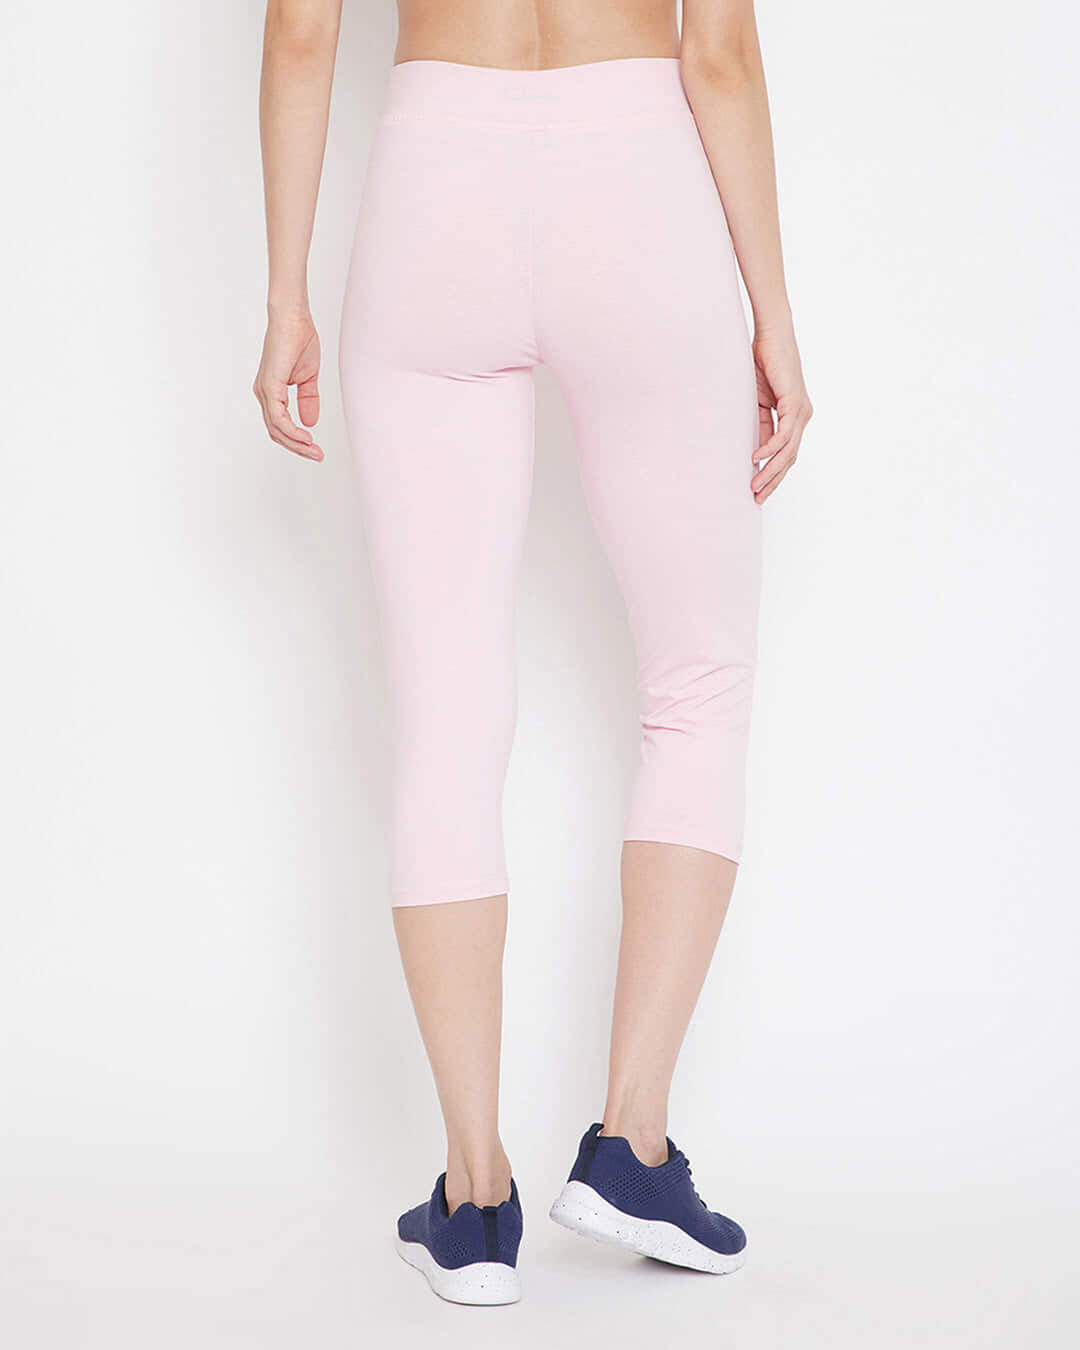 Shop Women's Snug Fit Active Capri In Baby Pink   Cotton Rich-Back